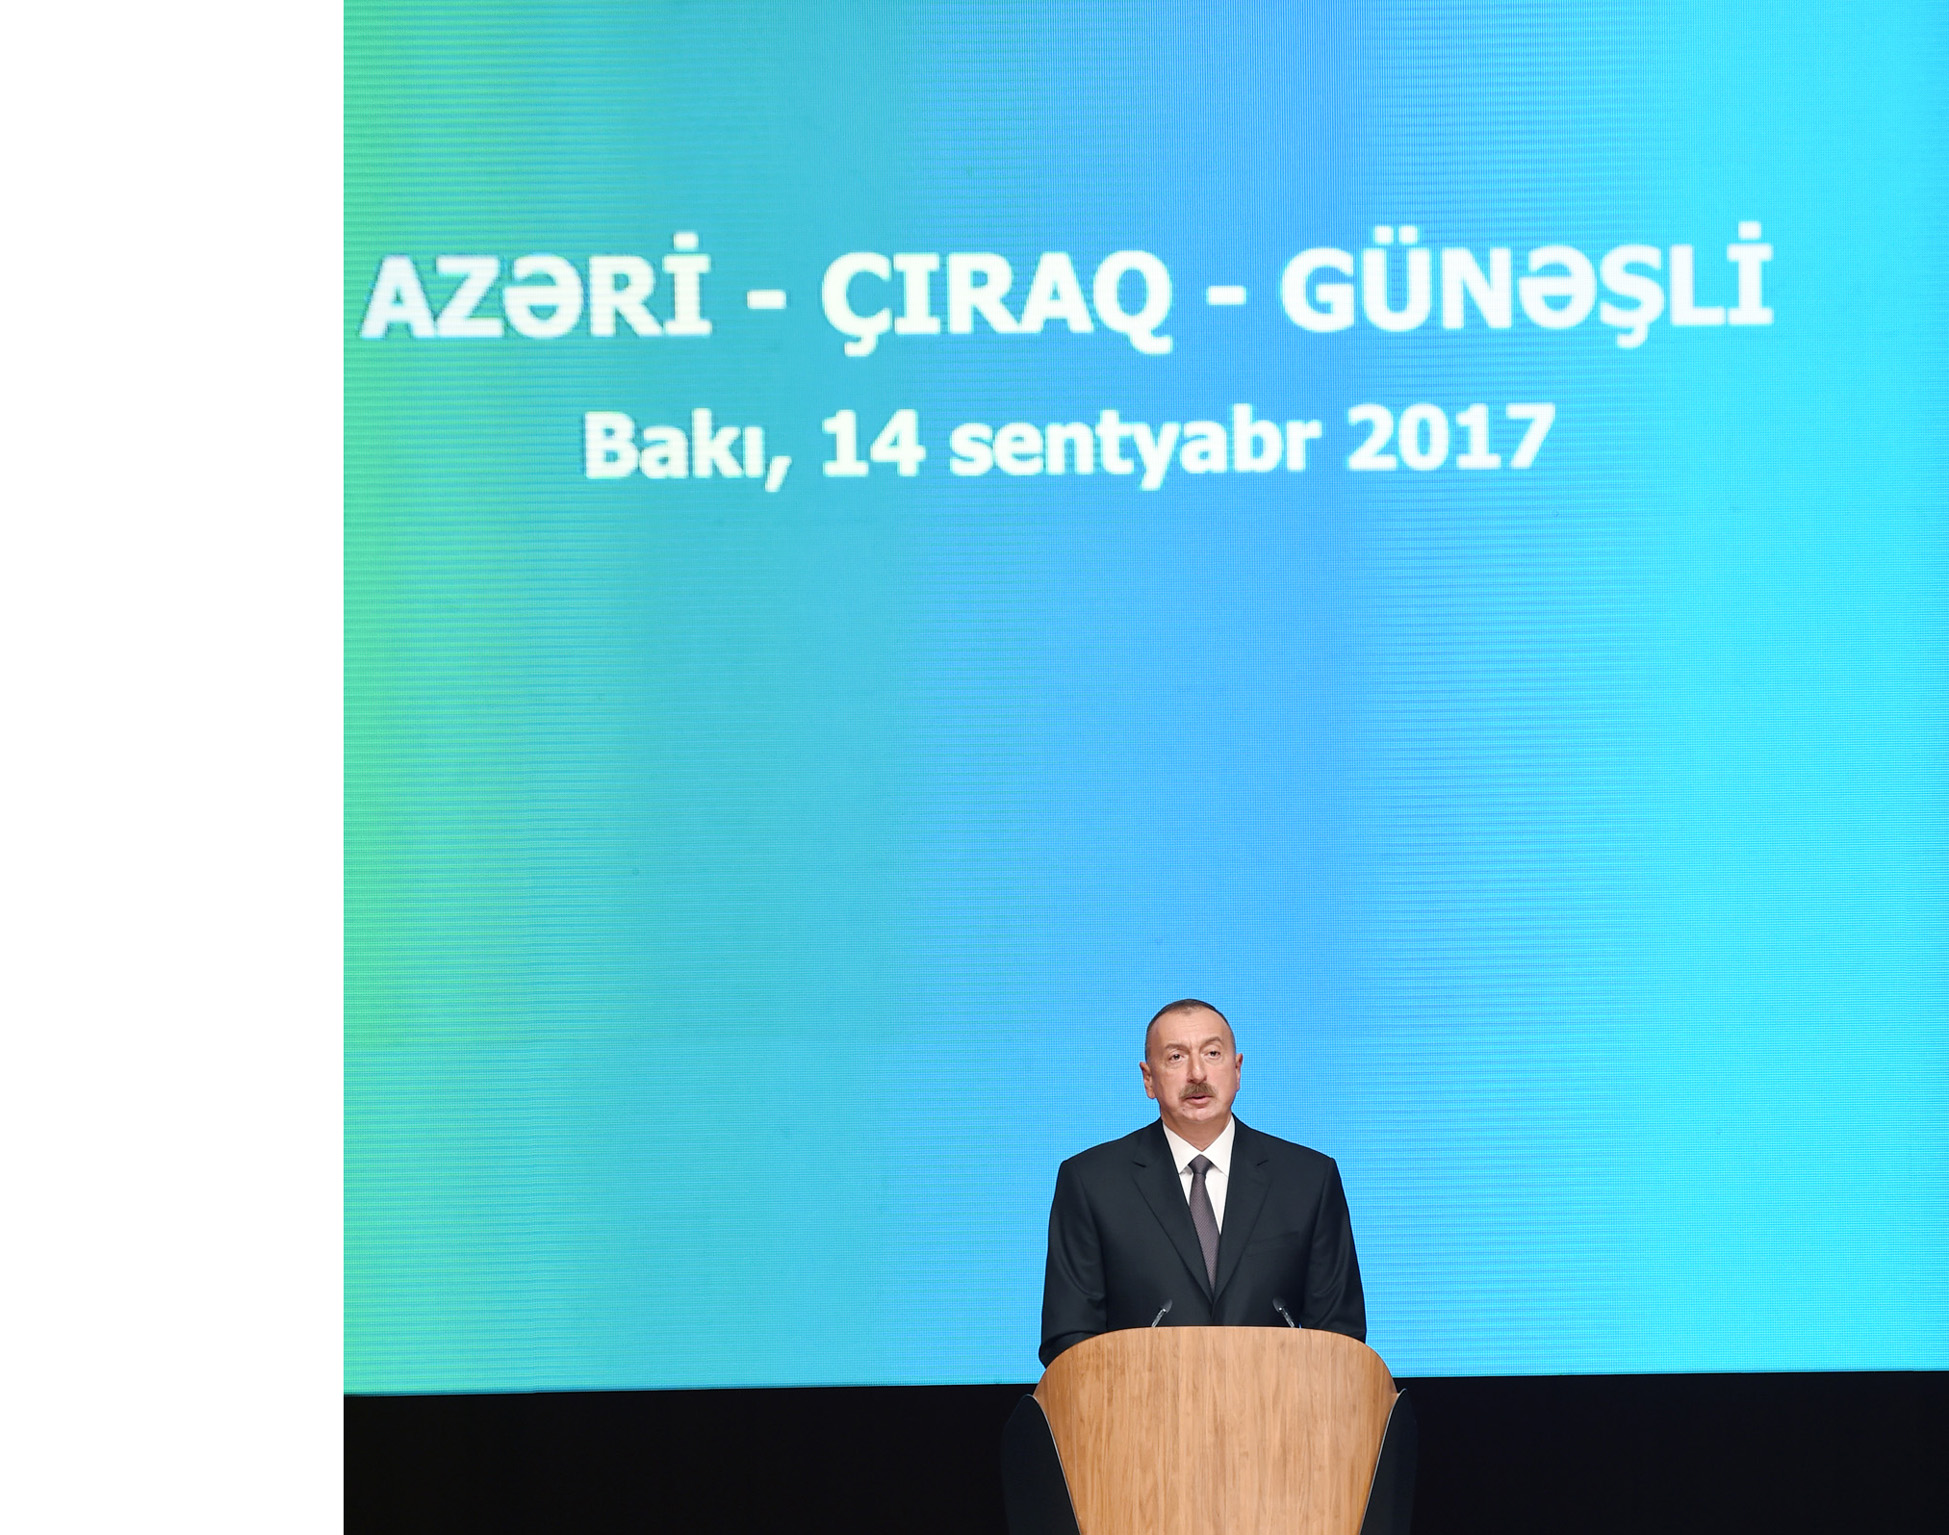 В Баку состоялась церемония подписаниянового Соглашения по месторождениям «Азери», «Чыраг» и «Гюнешли»